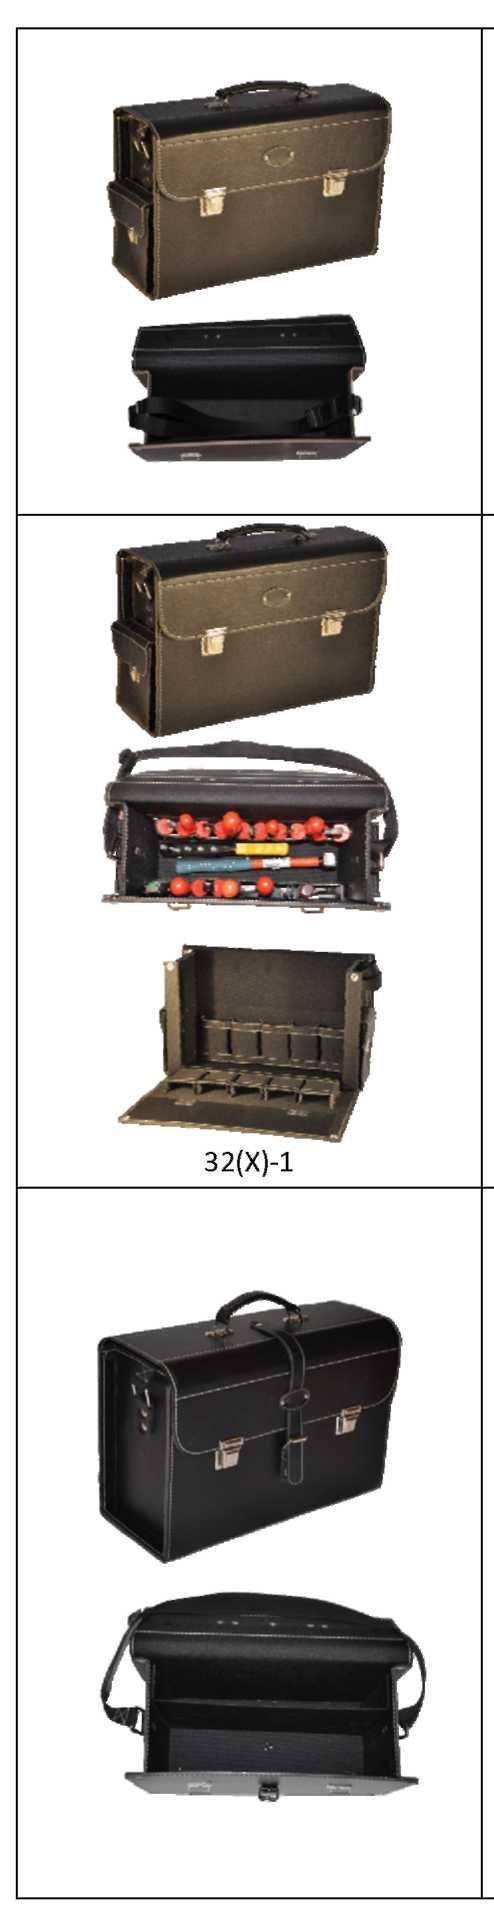 syntetická prepážka na prednej strane, popruh s náramenníkom, držadlá zosilnené kovovou lištou v klope tašky, chrániče dna, 2 bočné vačky (120x140x30) 311-64,31 312-84,78 Syntetická podšívka,